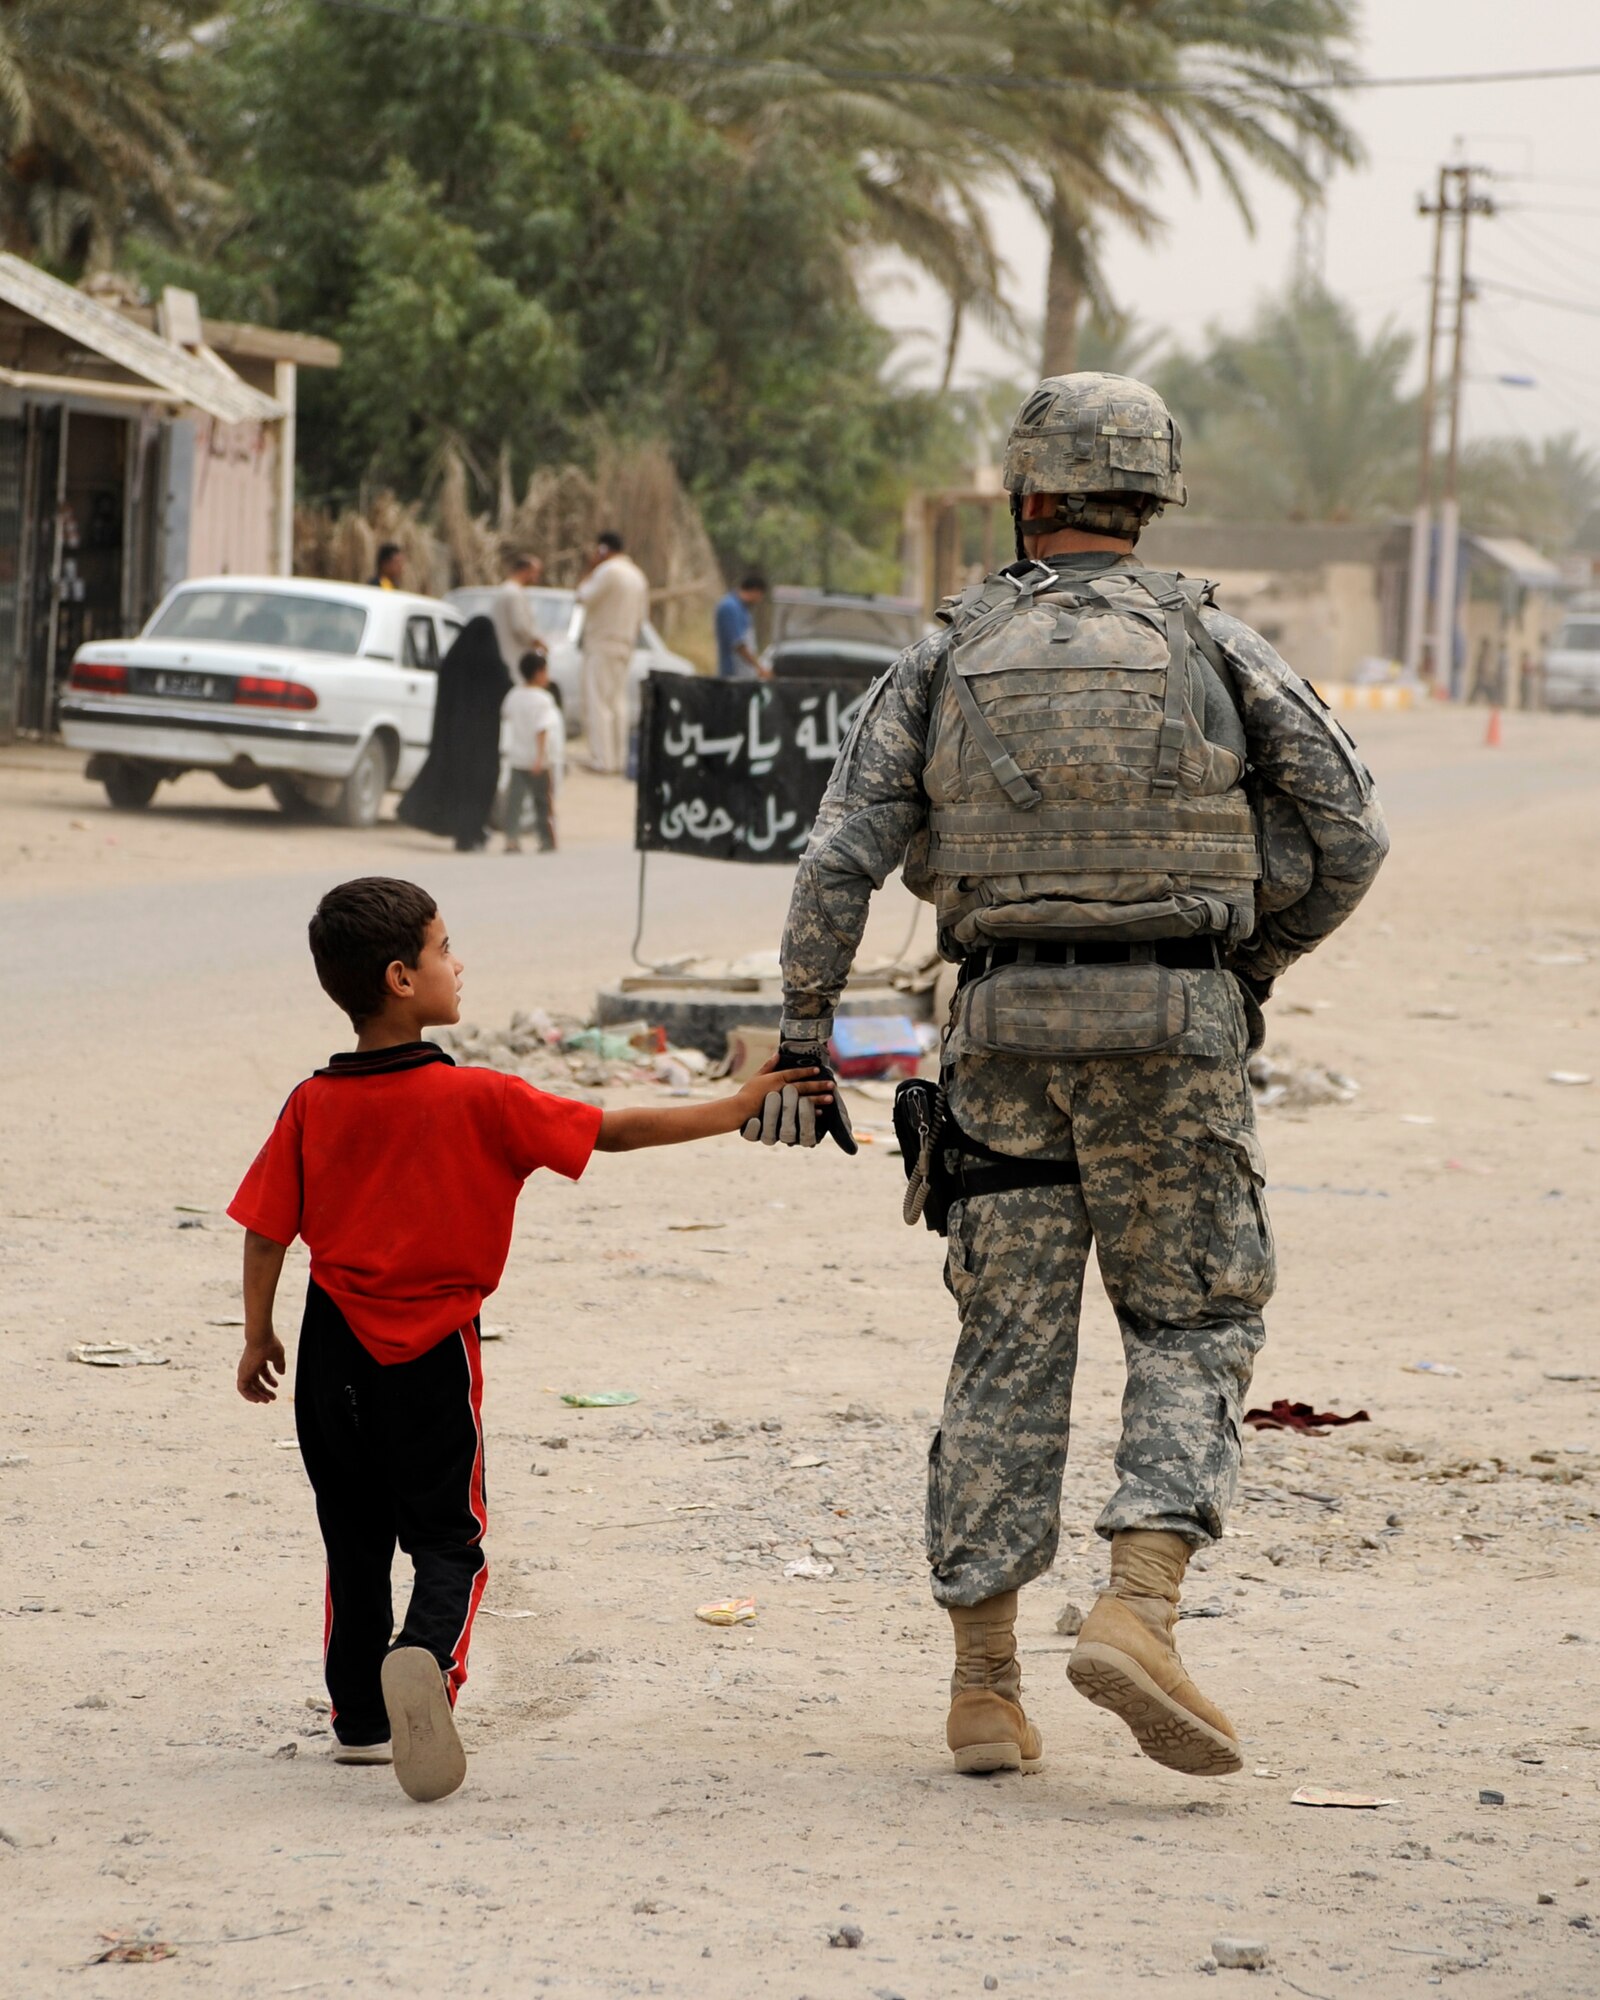 HAWR RAJAB, IRAQ -- A soldier with Alpha Troop, 6th Squadron, 8th Cavalry Regiment, walks with an Iraqi boy through the streets of Hawr Rajab, Iraq on Aug. 25. (U.S. Air Force photo/Staff Sgt. Paul Villanueva II)